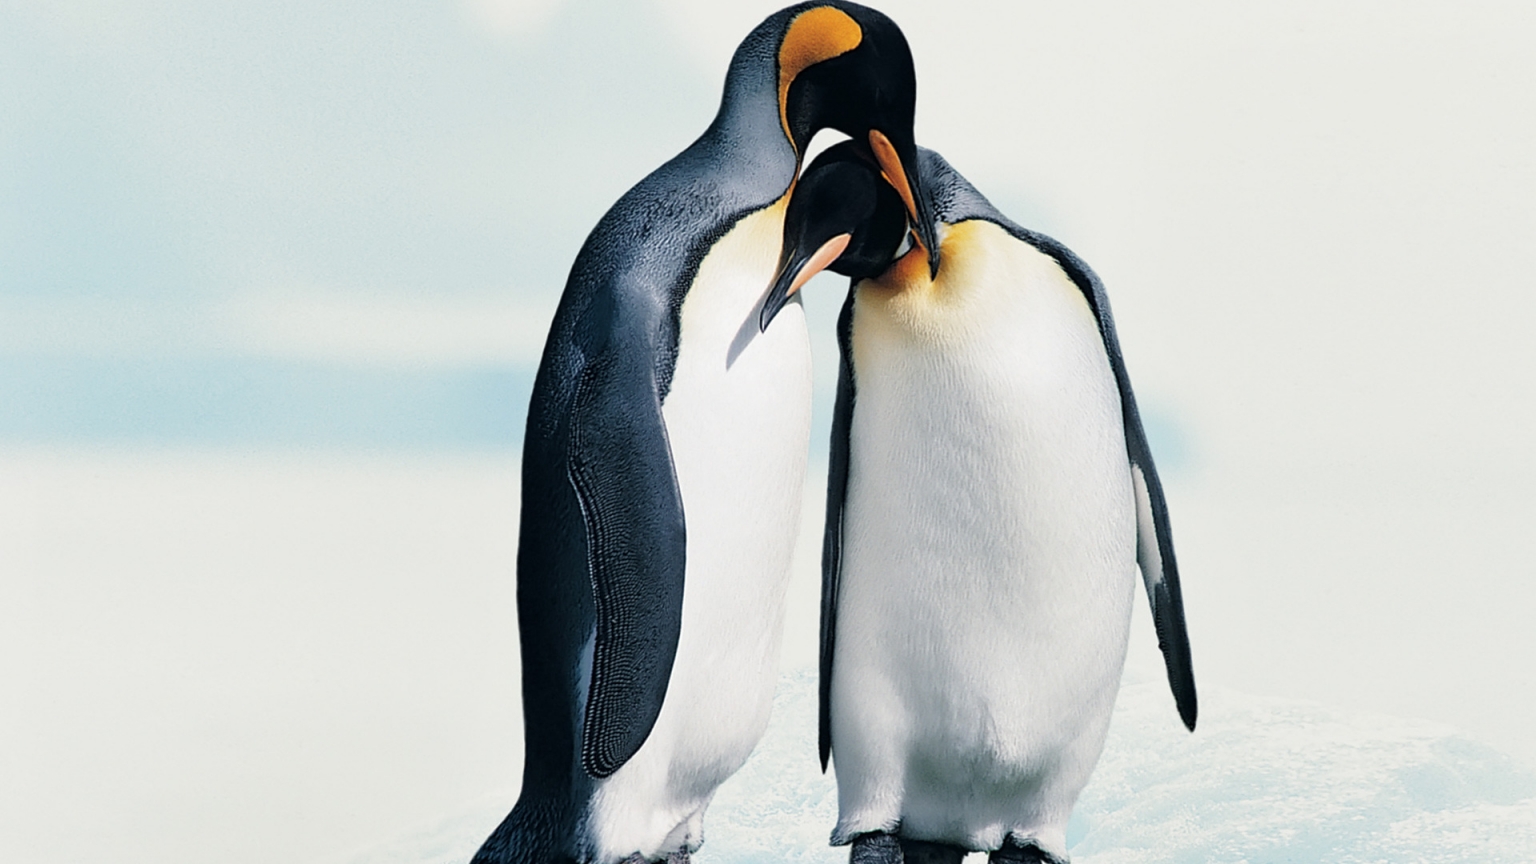 Penguins in Love for 1536 x 864 HDTV resolution